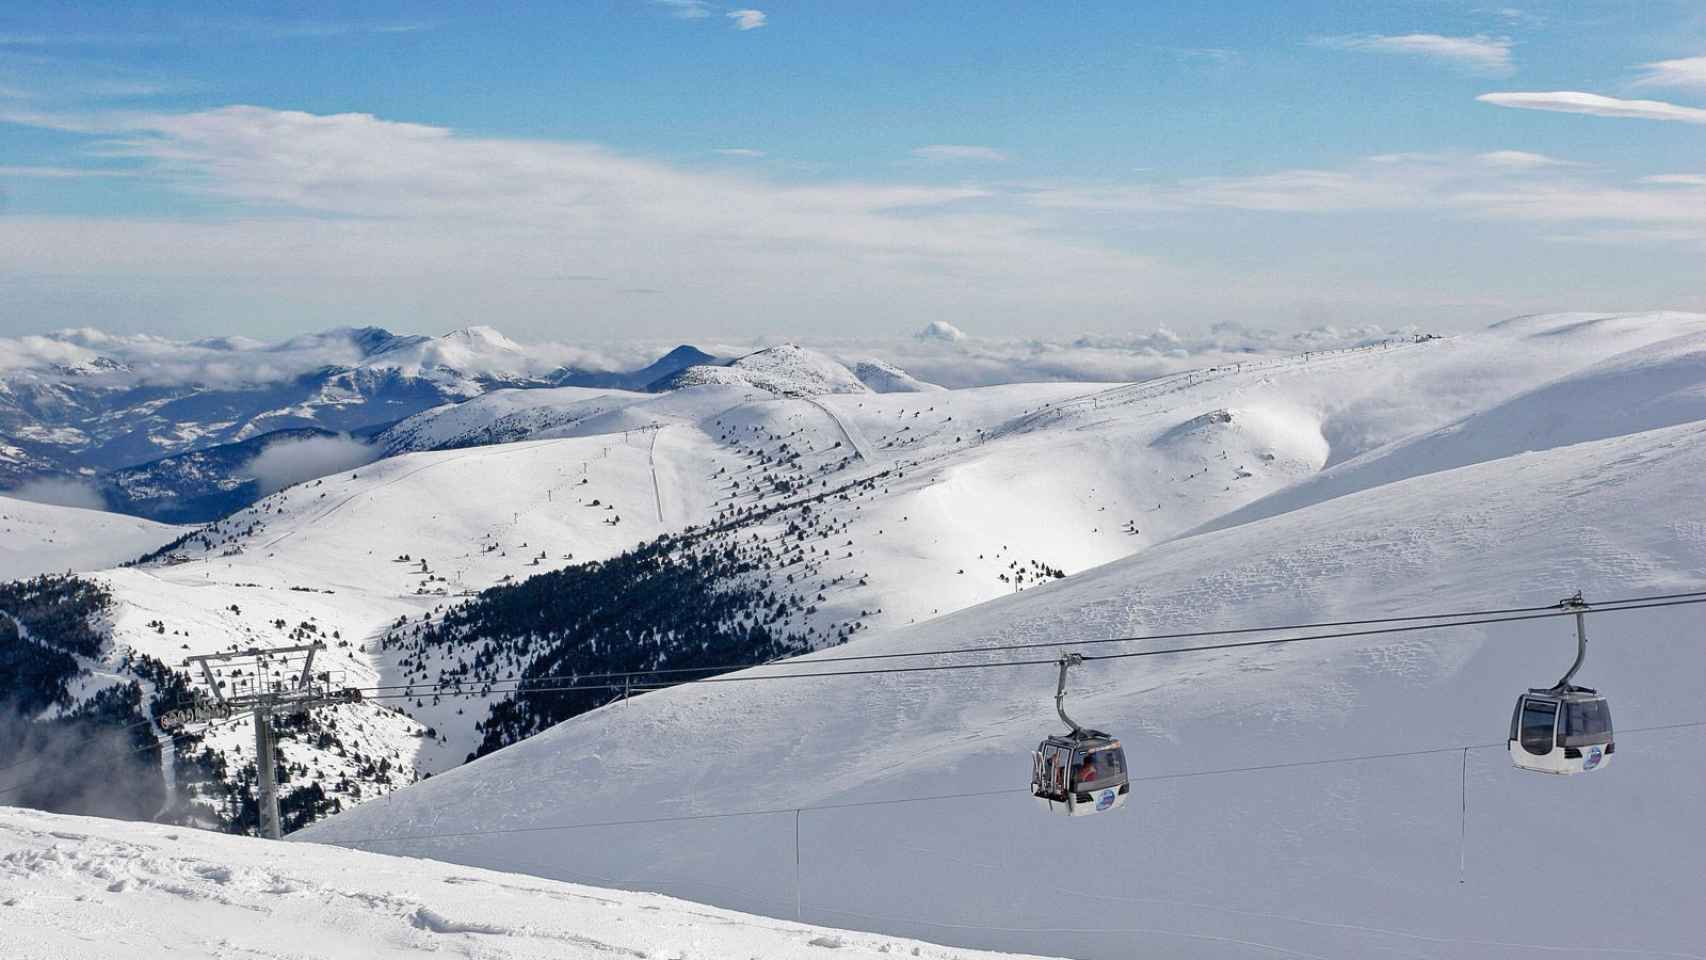 Pistas de esquí en La Molina, una de las población que bate récord de frío en España